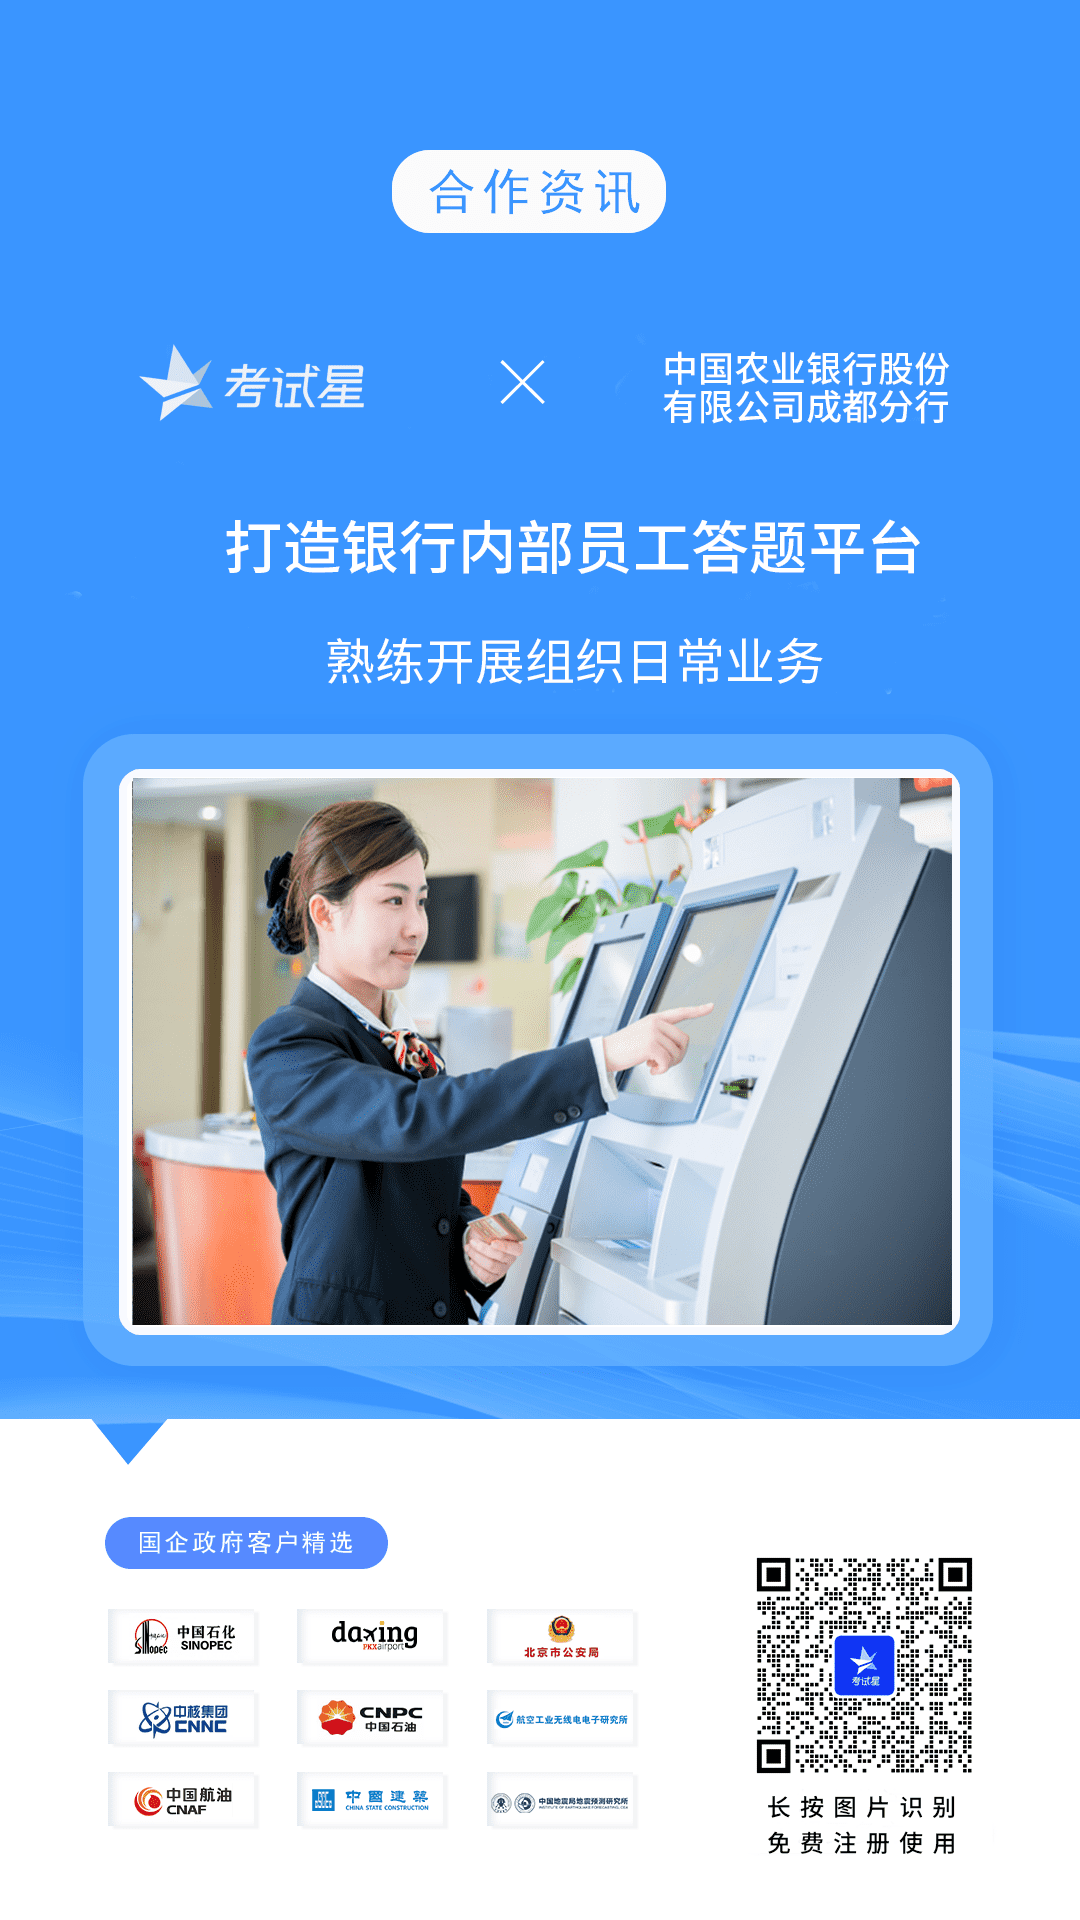 中国农业银行股份有限公司成都分行-考试星银行员工答题平台